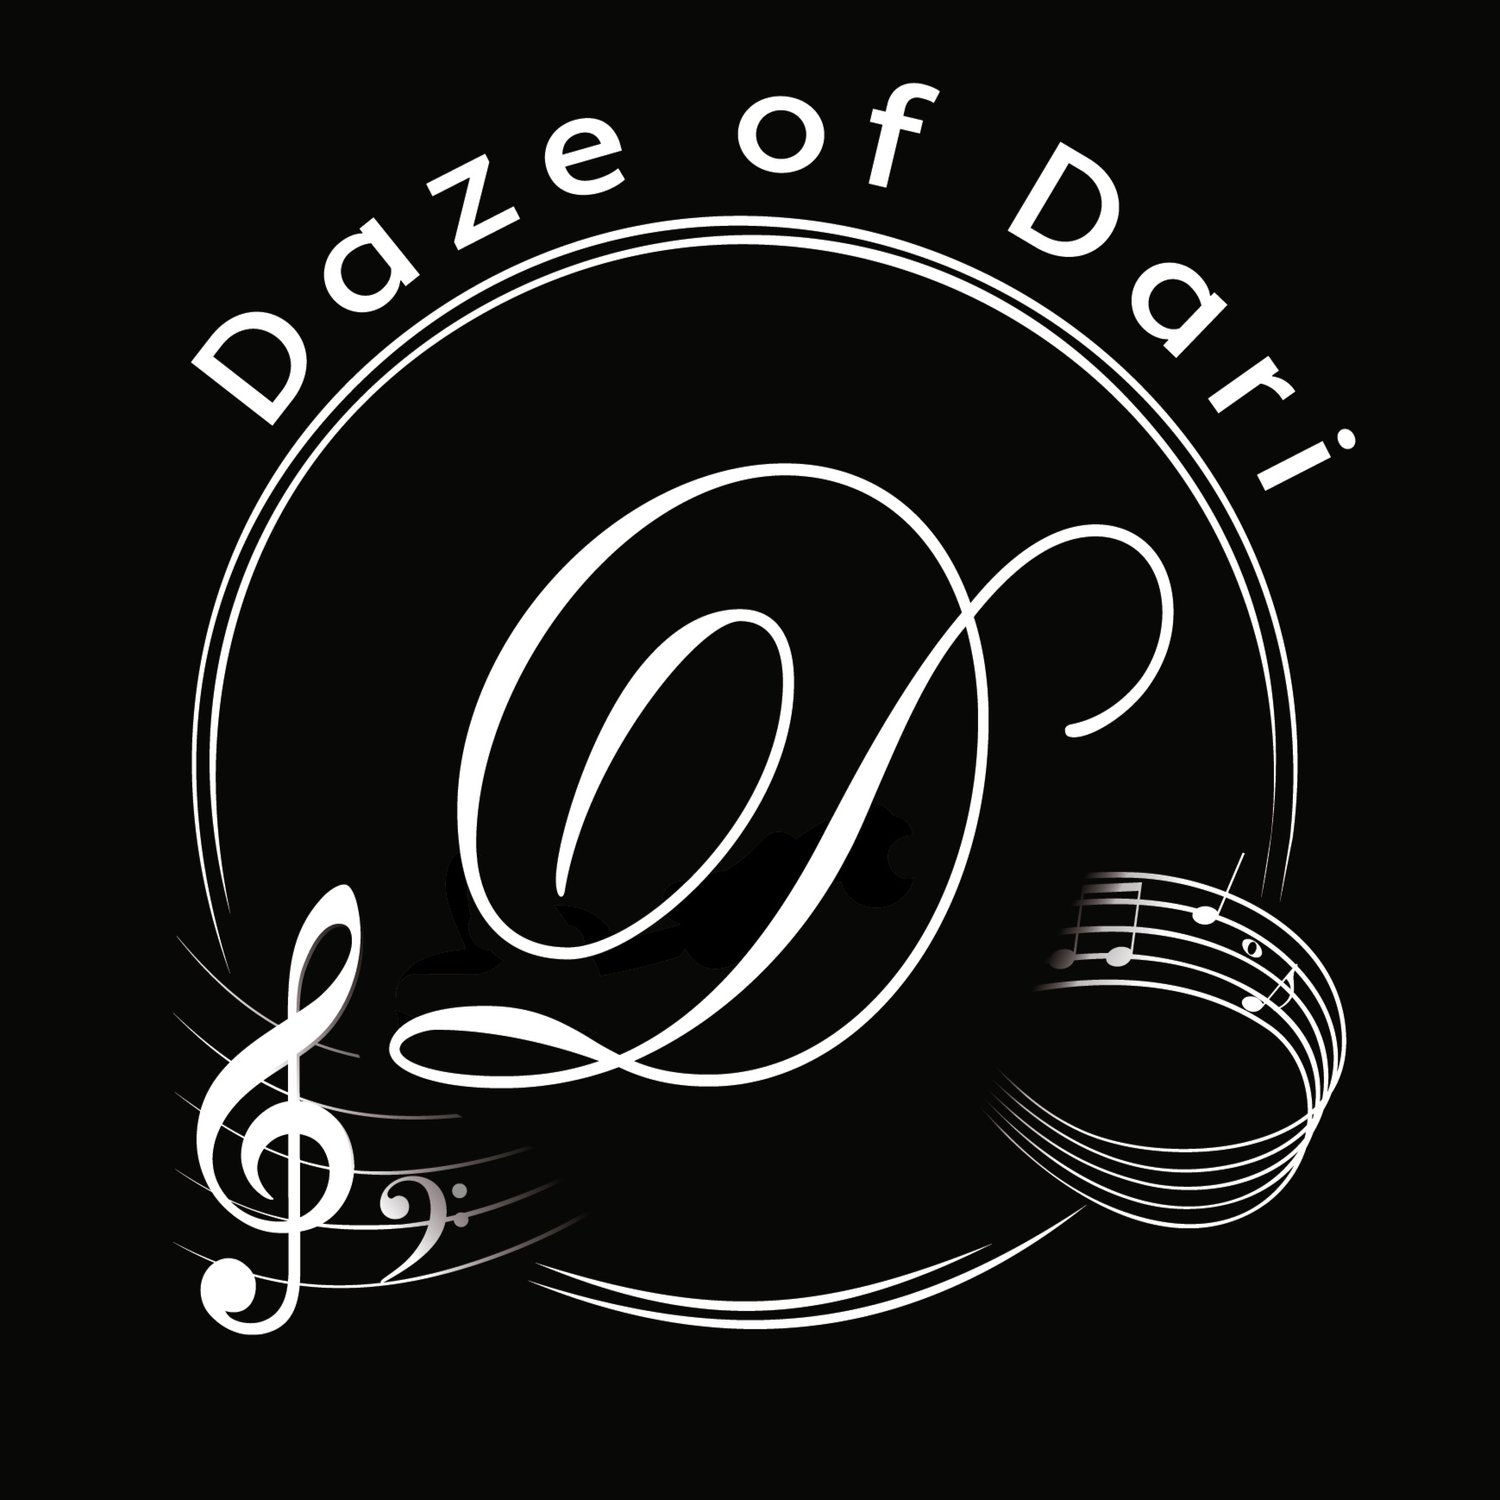 Daze of Dari